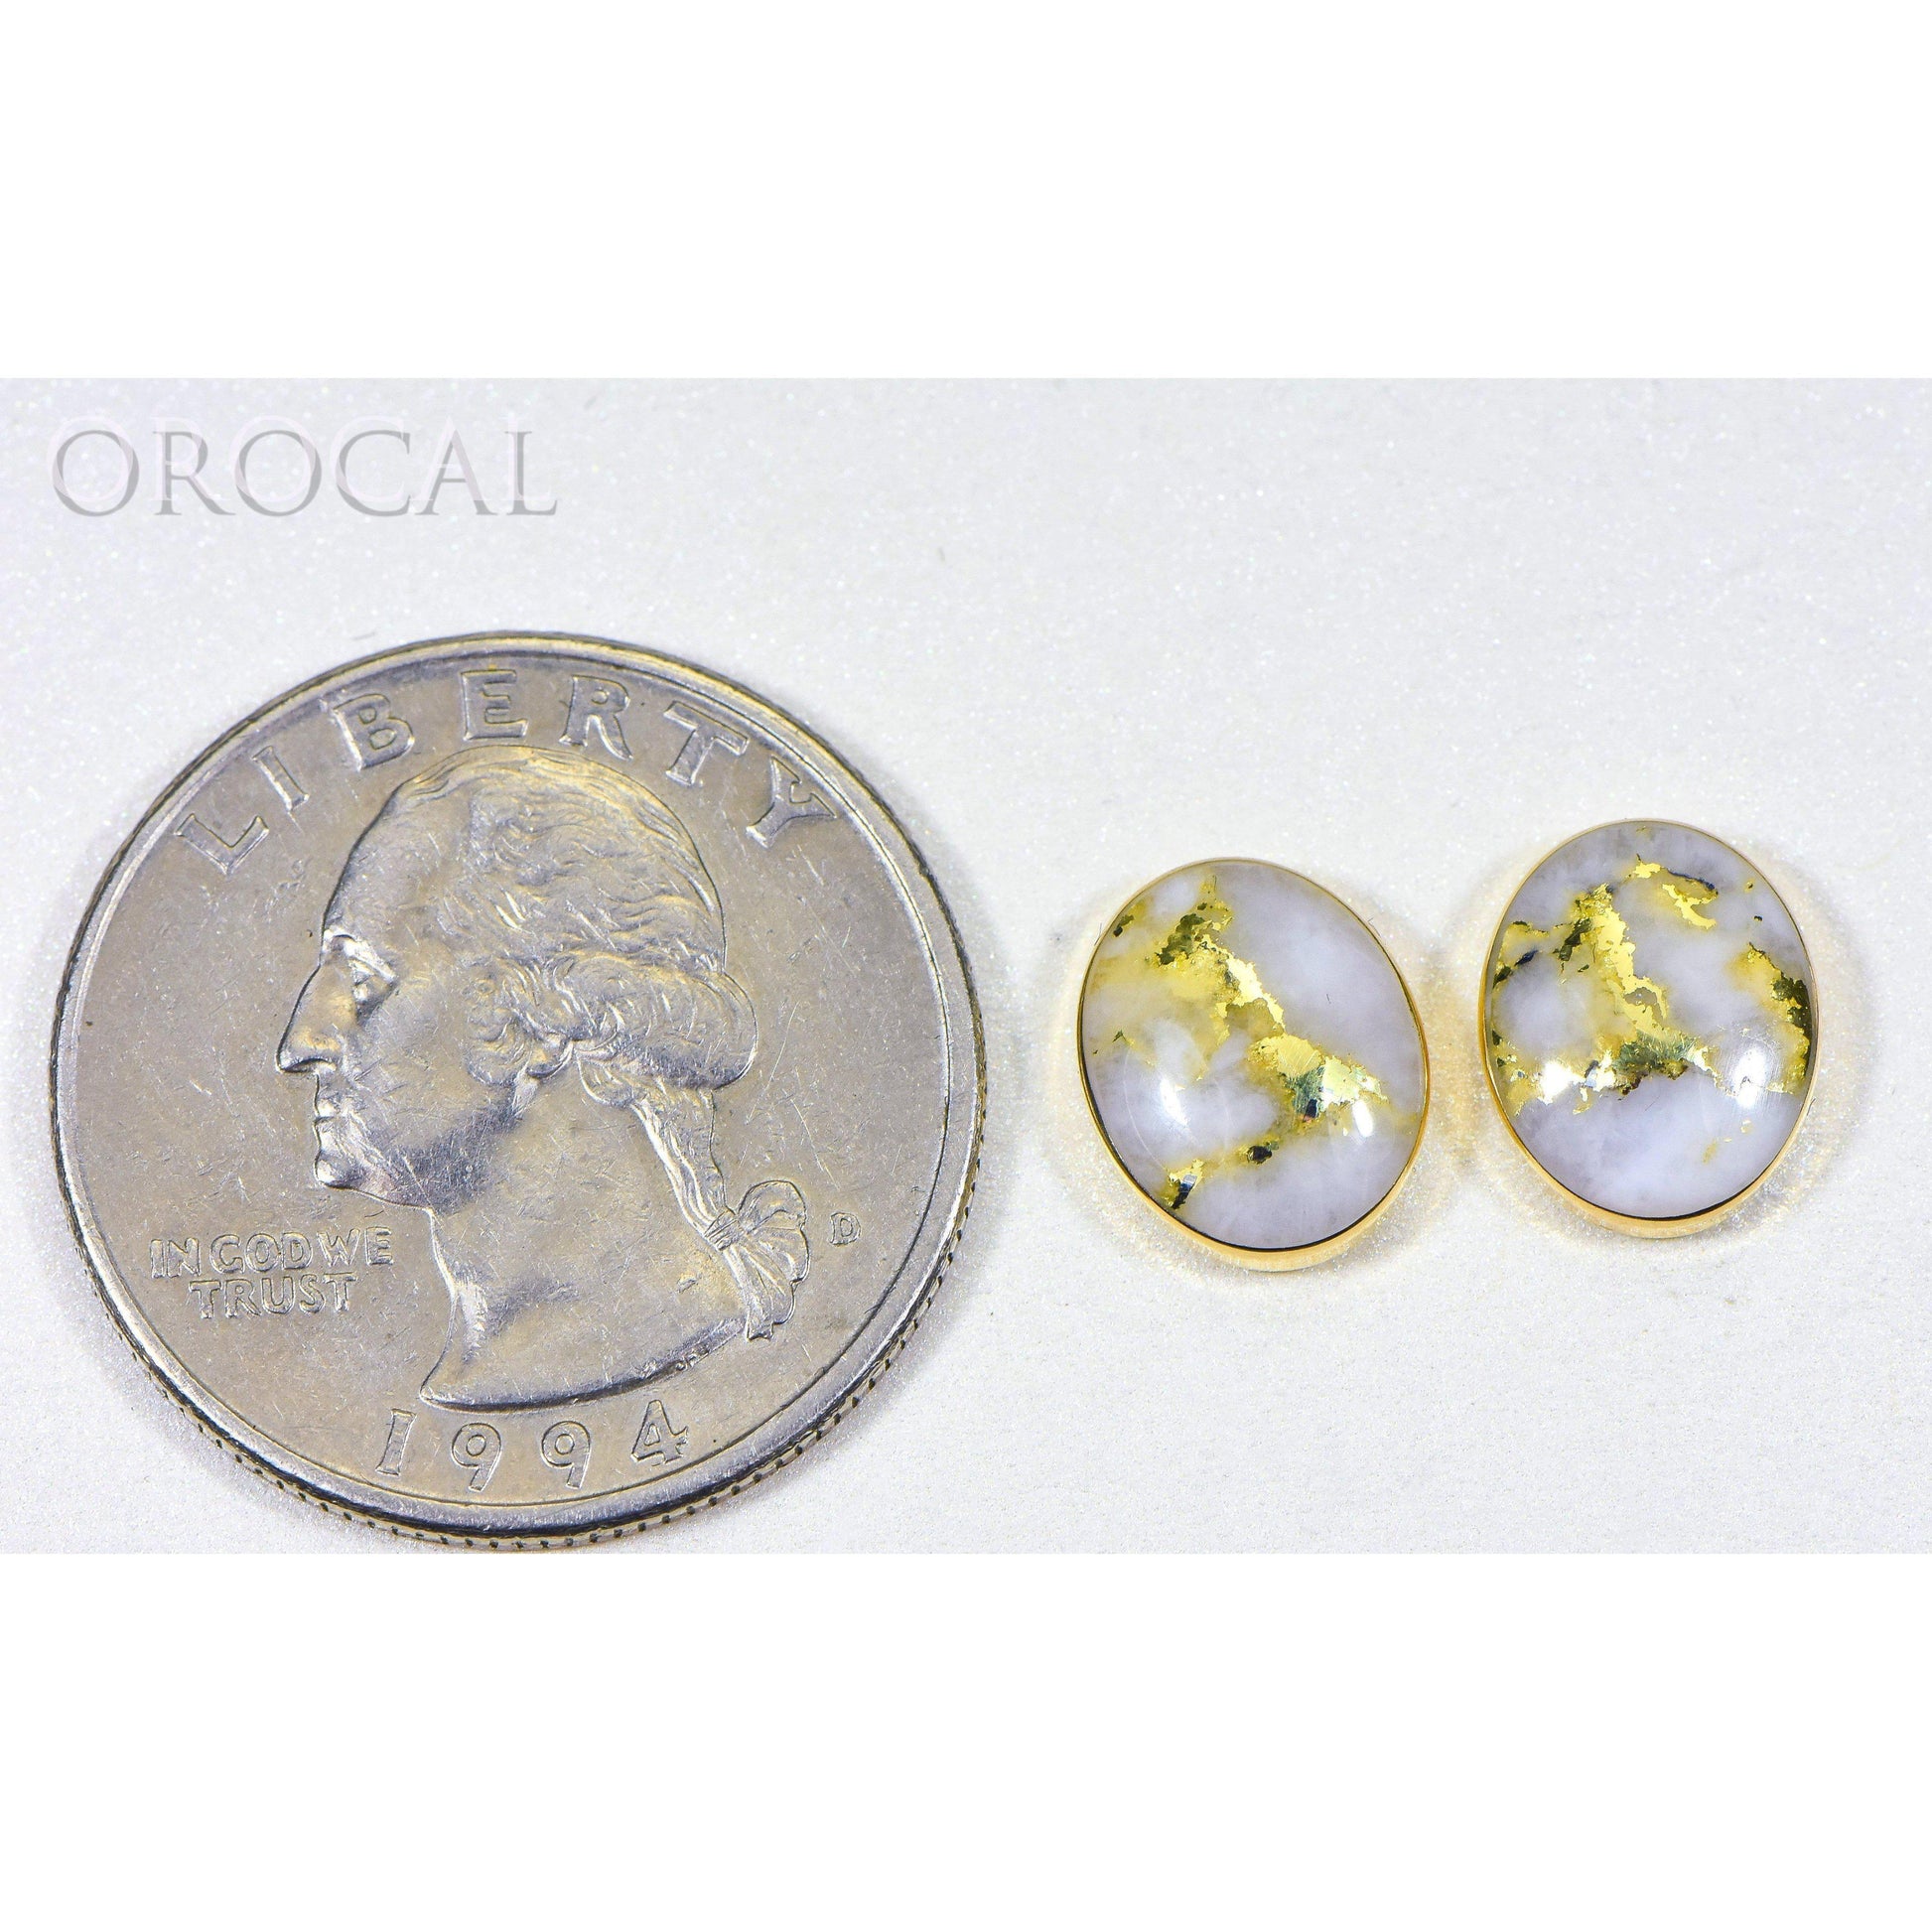 Gold Quartz Earrings Post Backs - EBZ8*6Q-Destination Gold Detectors